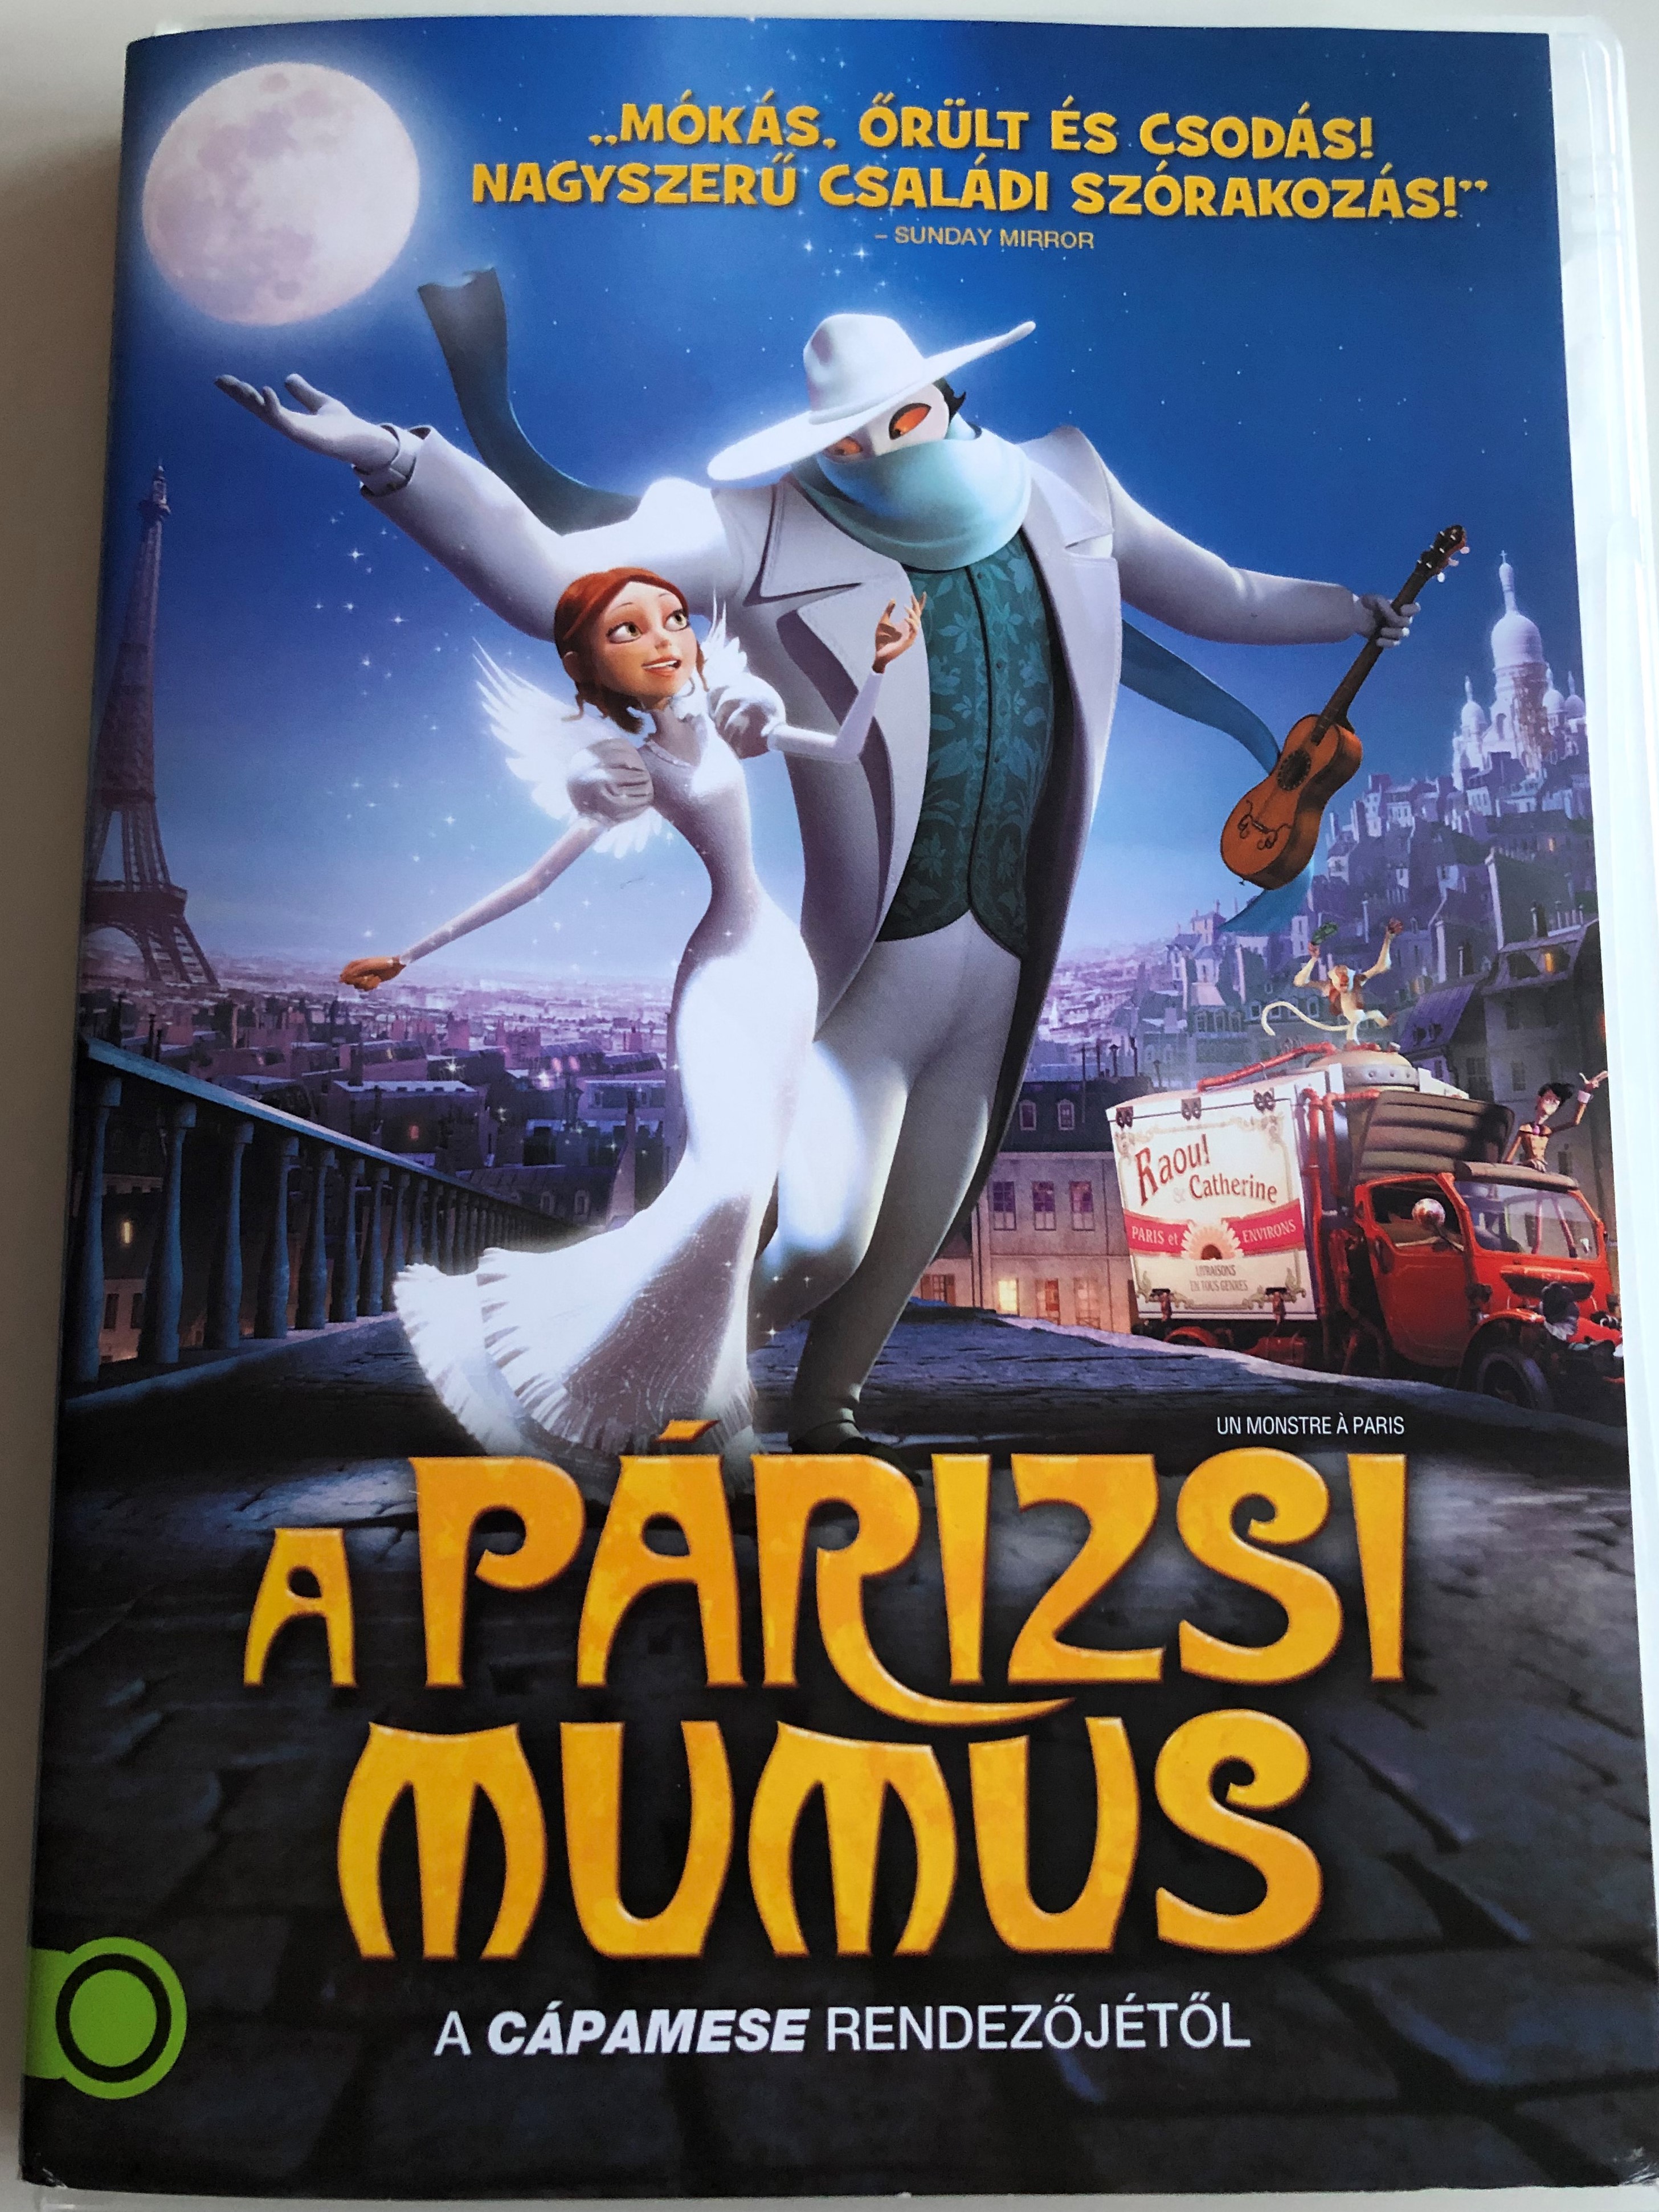 un-monstre-paris-dvd-2011-a-p-rizsi-mumus-a-monster-in-paris-1.jpg